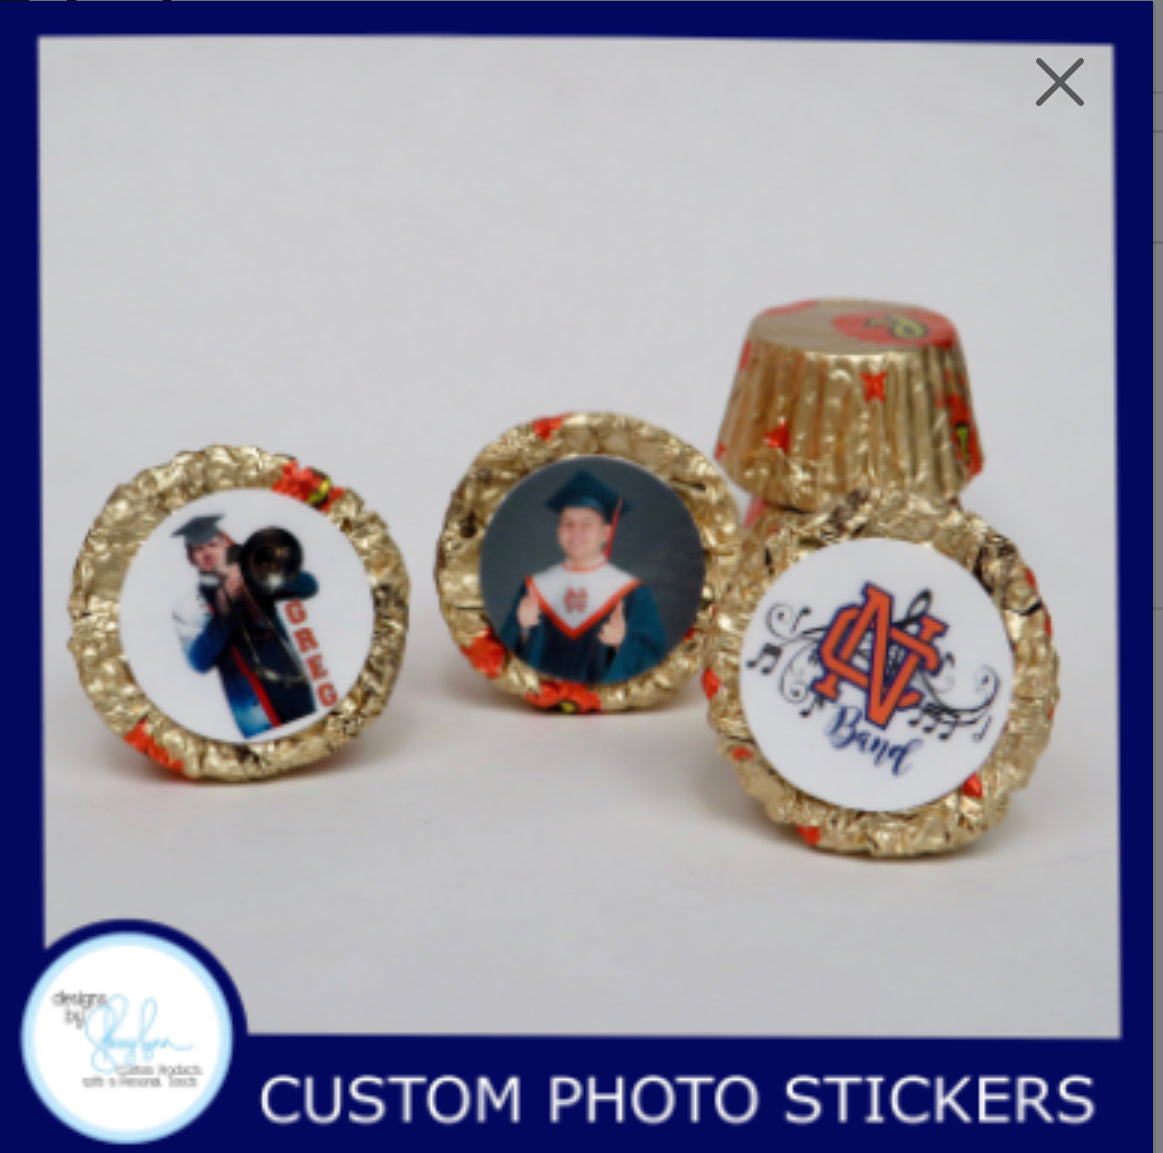 Custom Mini Reese Stickers - Graduation, Birthday, Wedding, Baby Shower, Anniversary, photo stickers